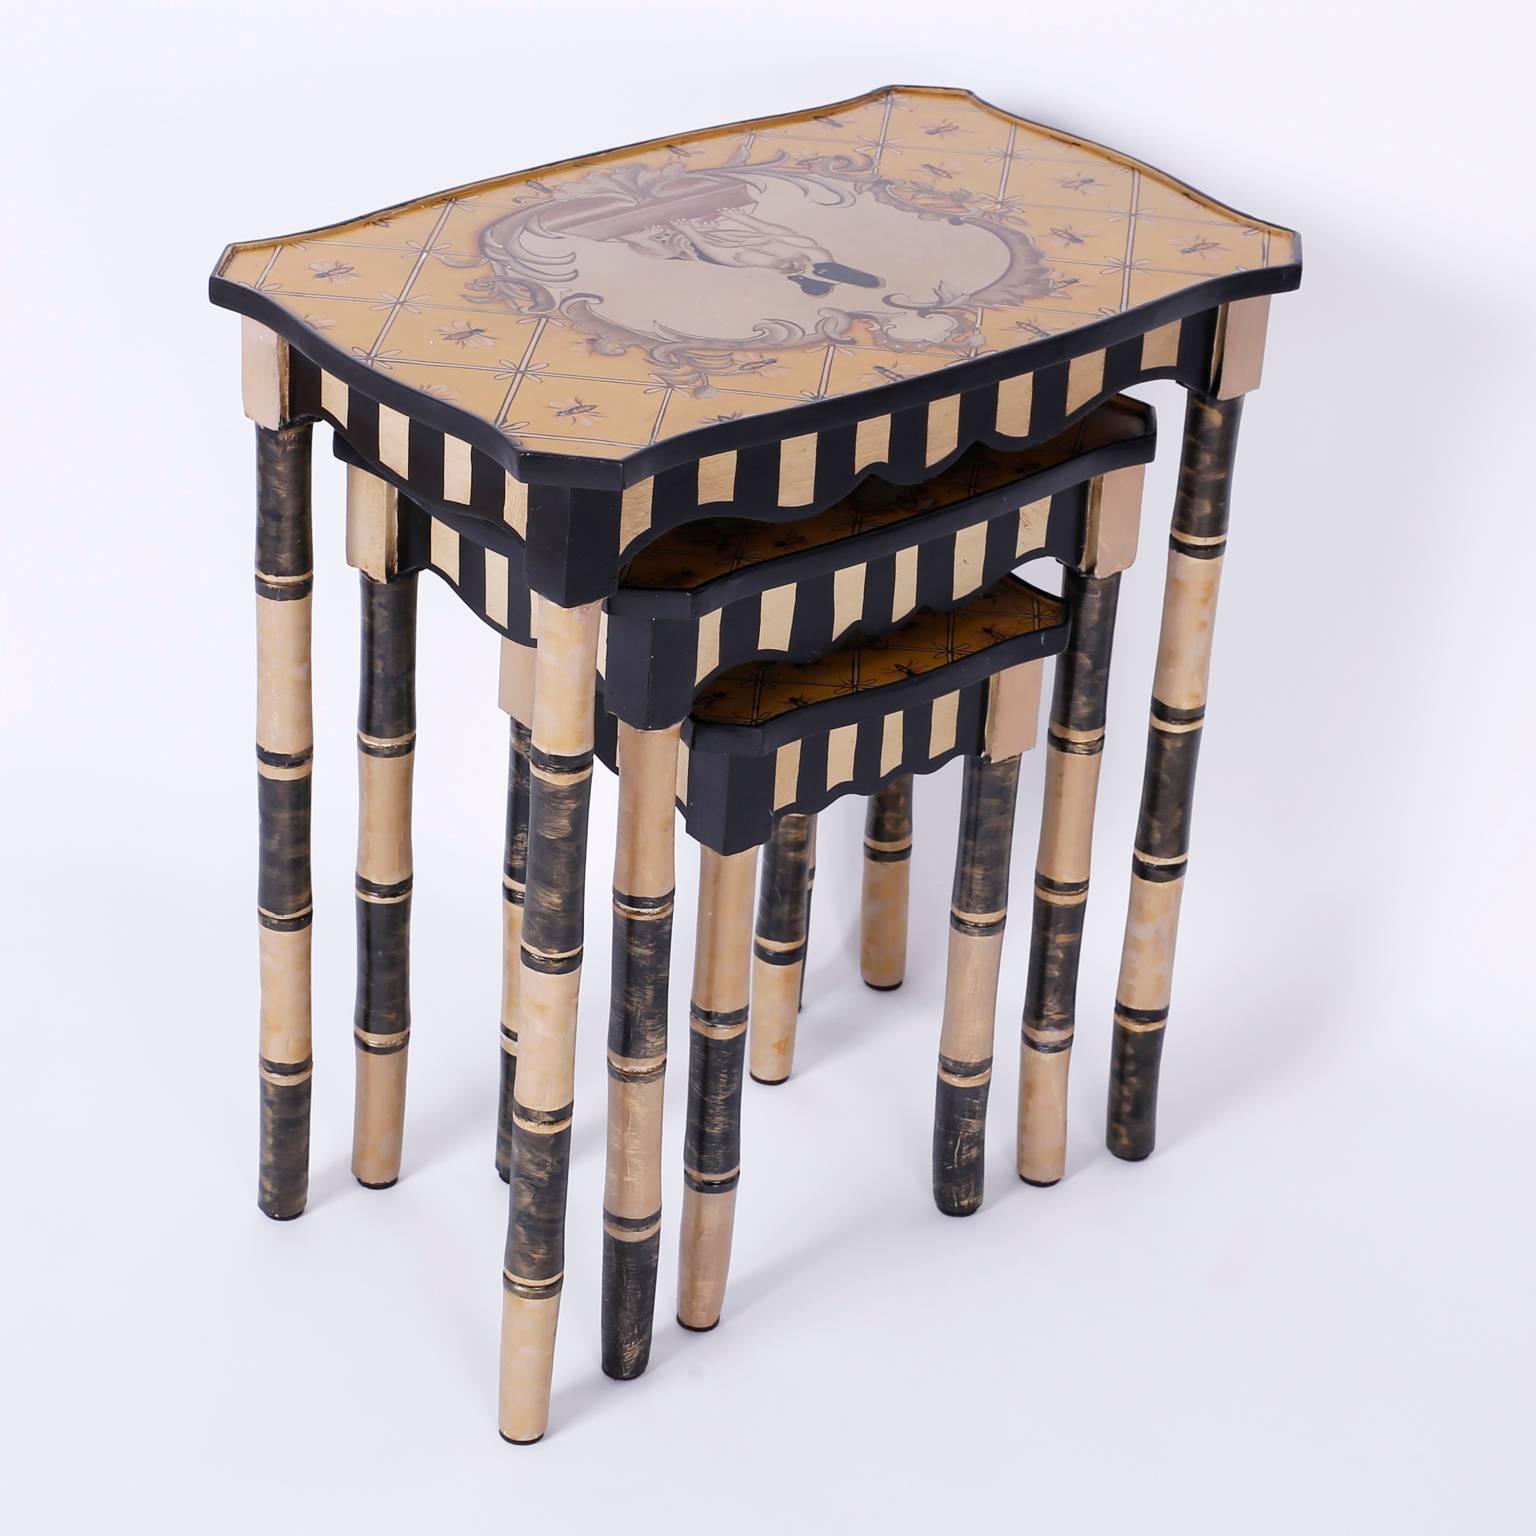 Folk Art Dog Themed Nesting Tables For Sale